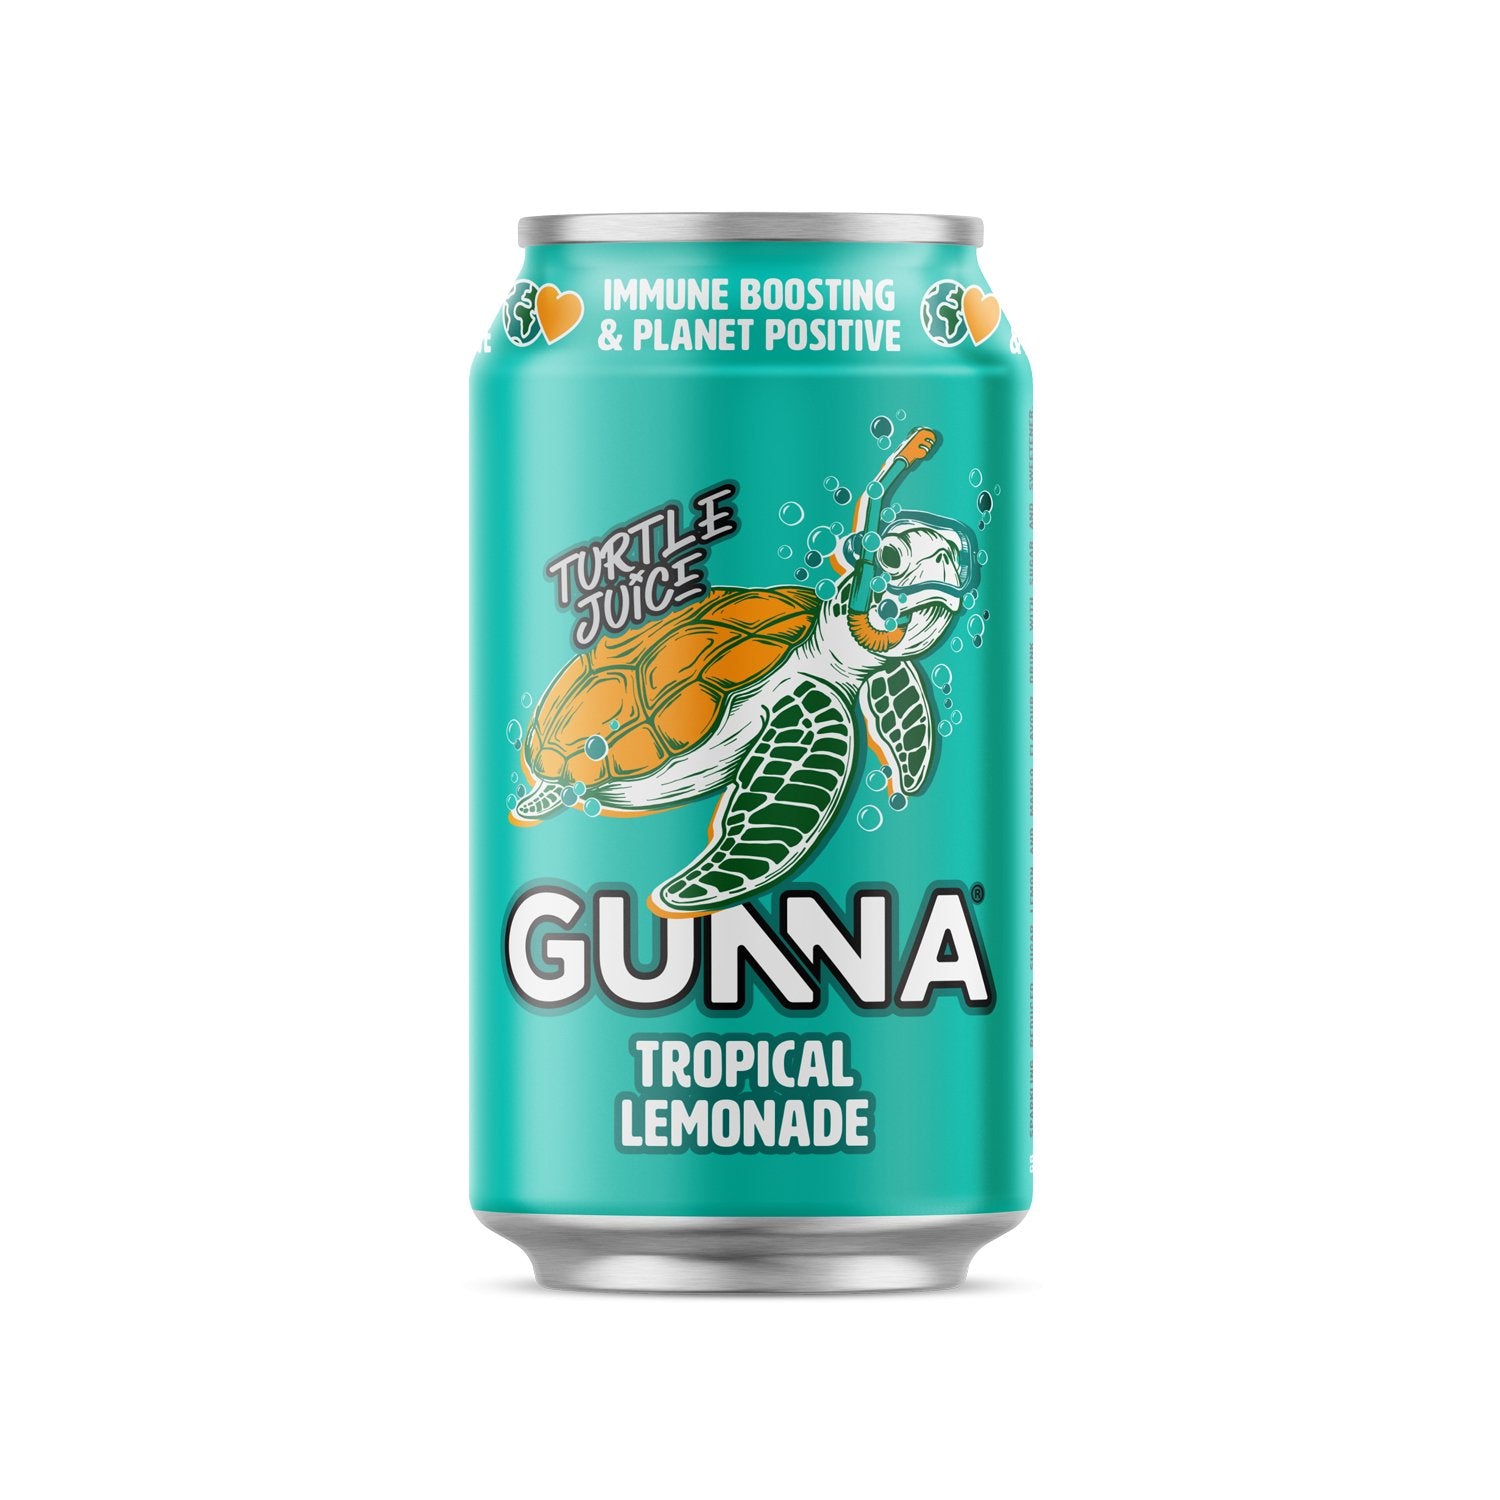 Gunna Lemonade (Tre smagsvarianter at vælge imellem) - theskinnyfoodco